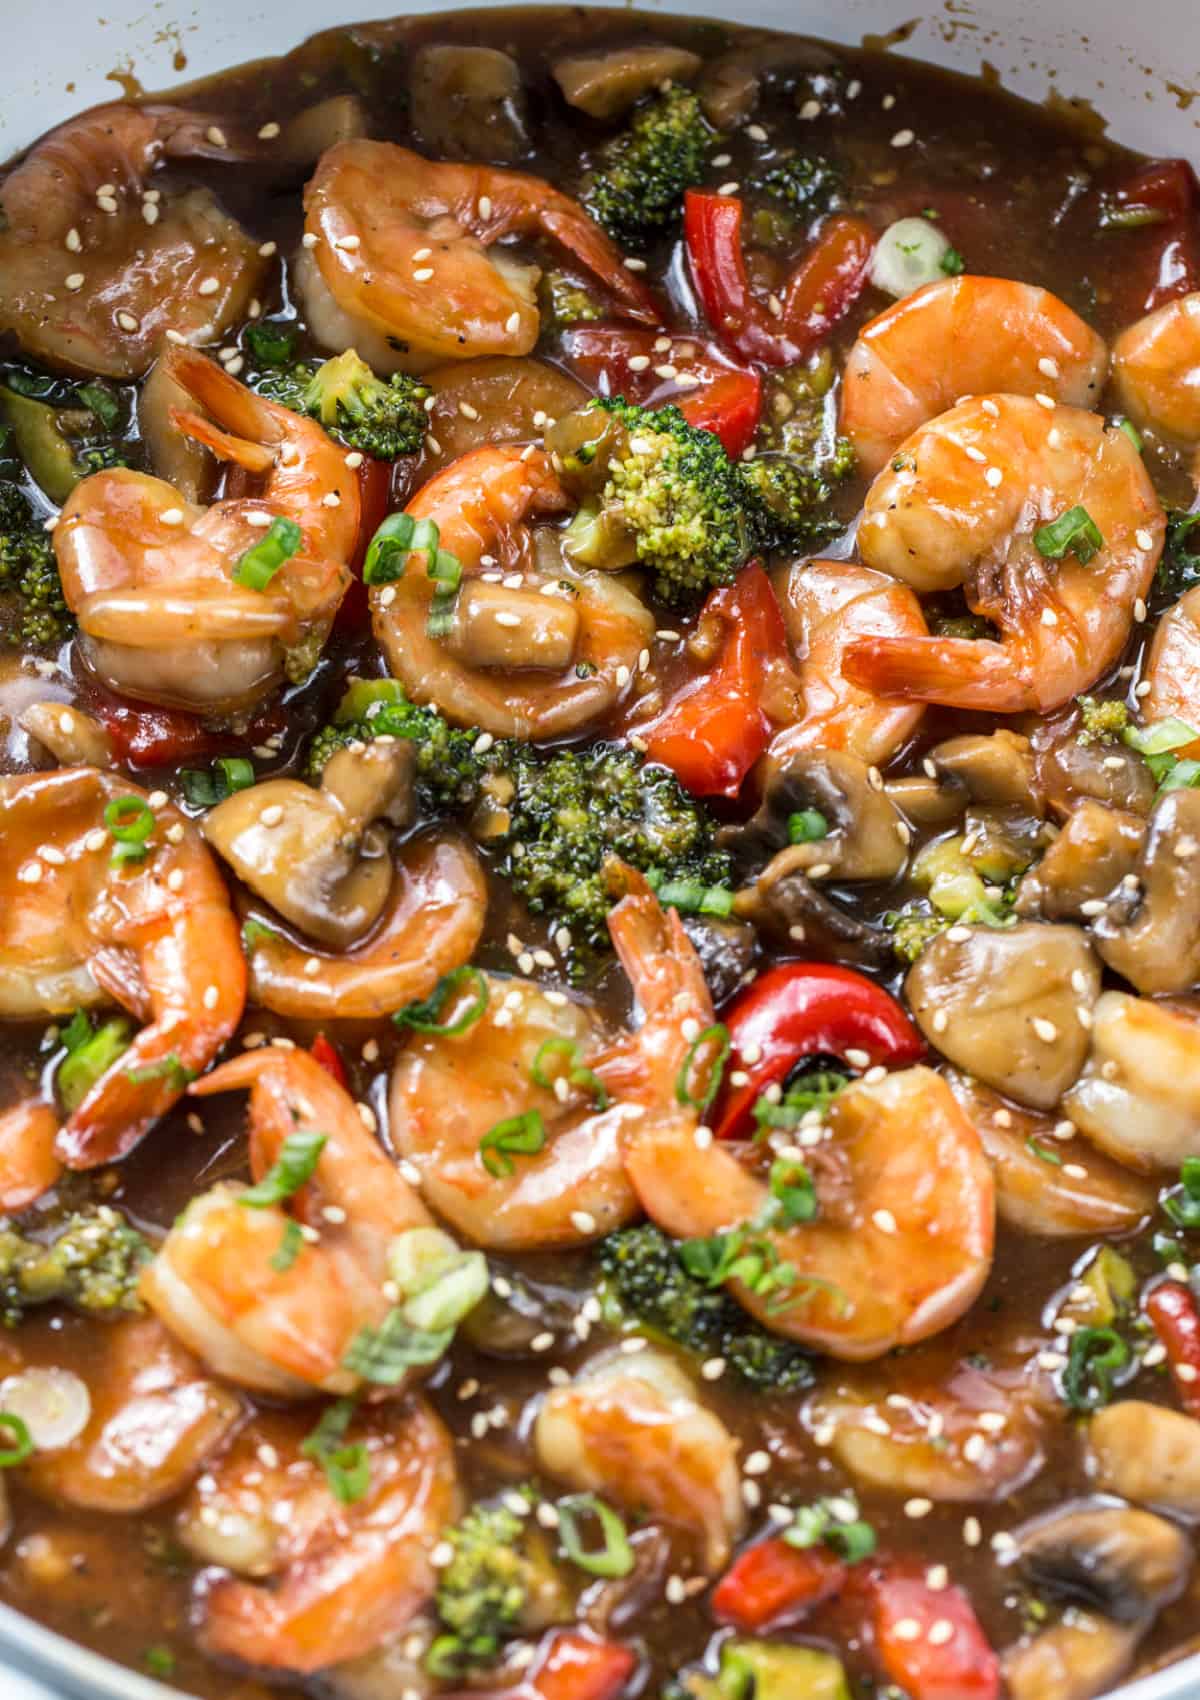 A close-up image of finished shrimp stir fry.